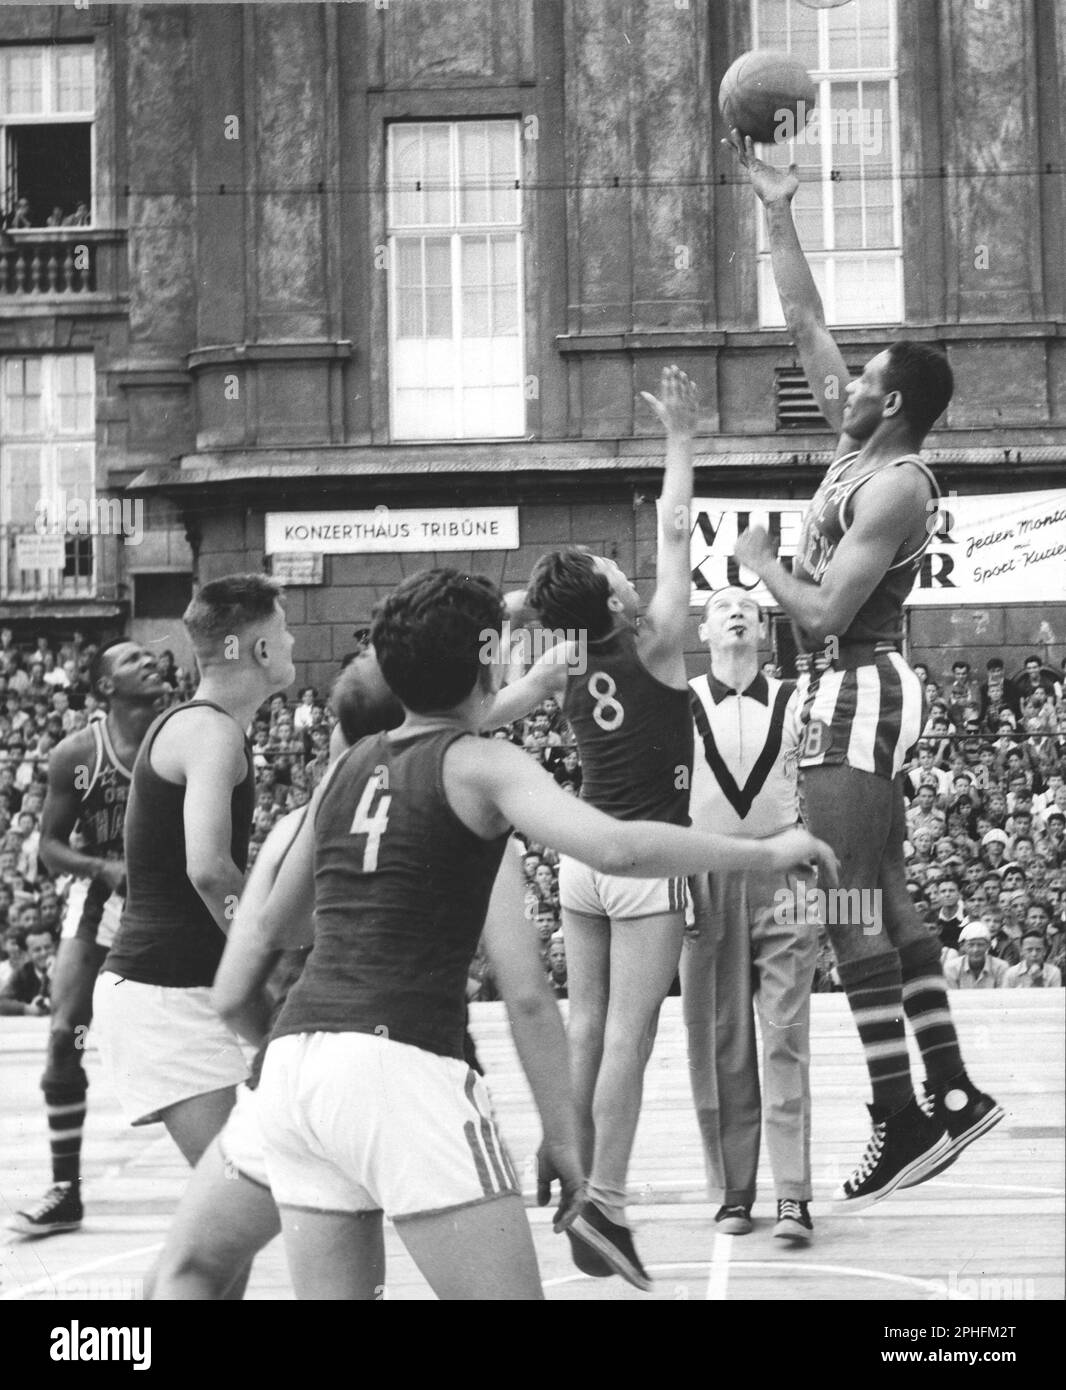 Fotografia dei Globetrotters Harlem che giocano a basket contro una squadra austriaca, Vienna, Austria, 1950. (Foto di United States Information Agency Foto Stock